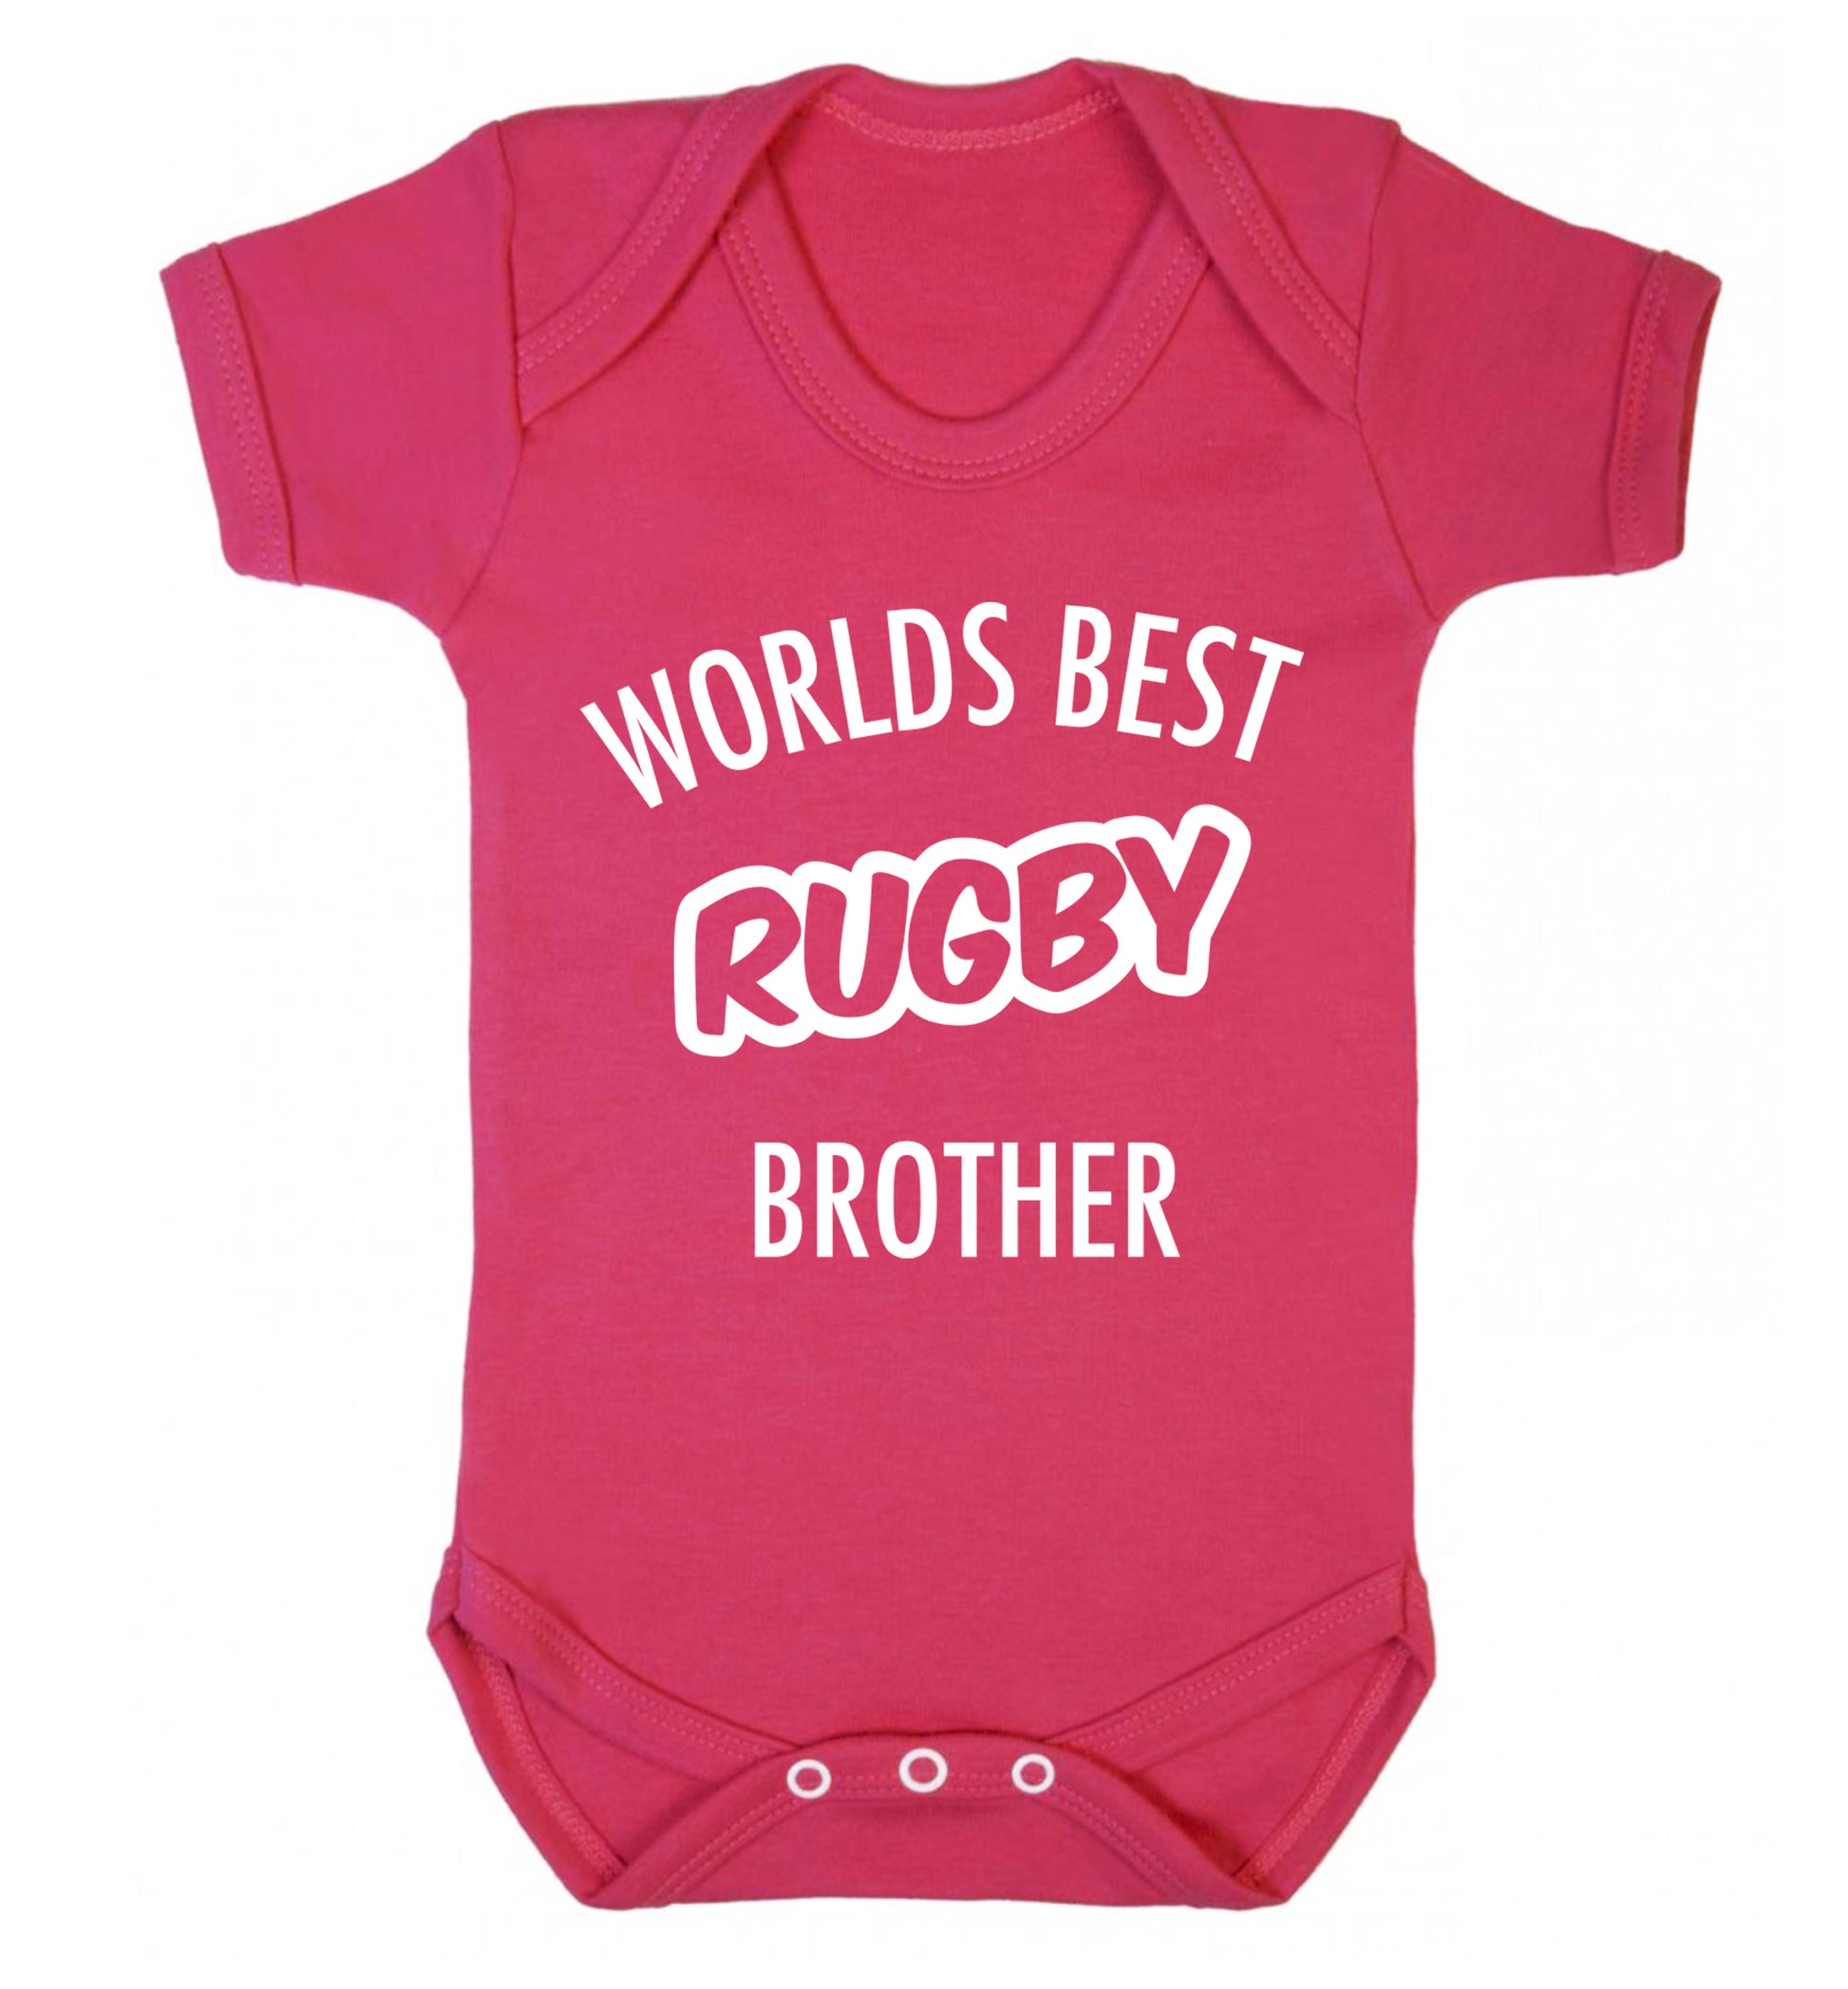 Worlds best rugby brother Baby Vest dark pink 18-24 months